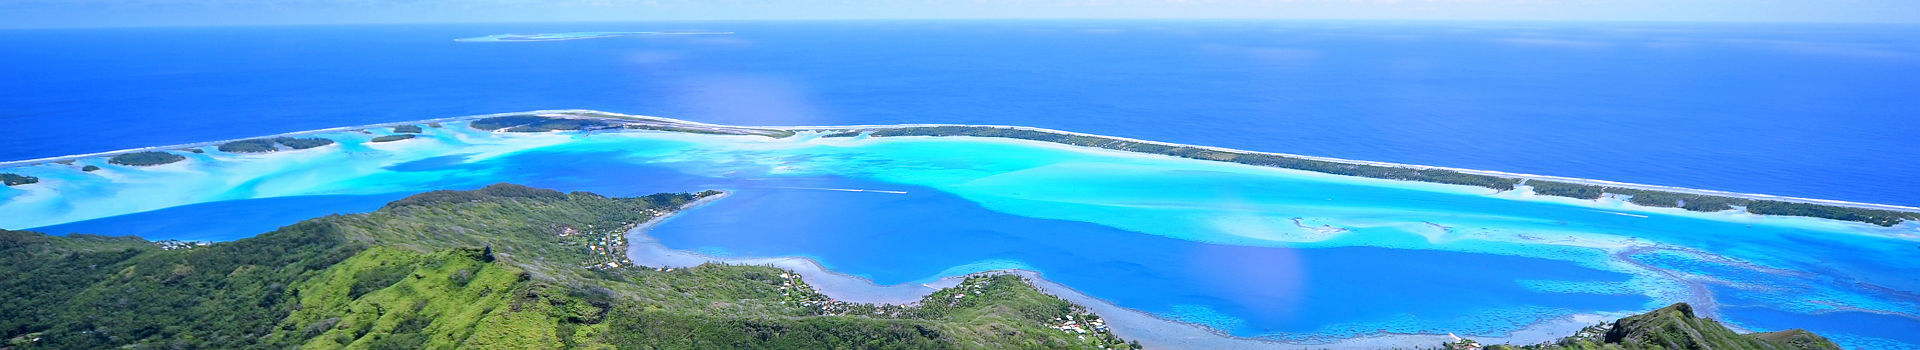 Polynésie Française - Vue aérienne sur l'île Bora Bora